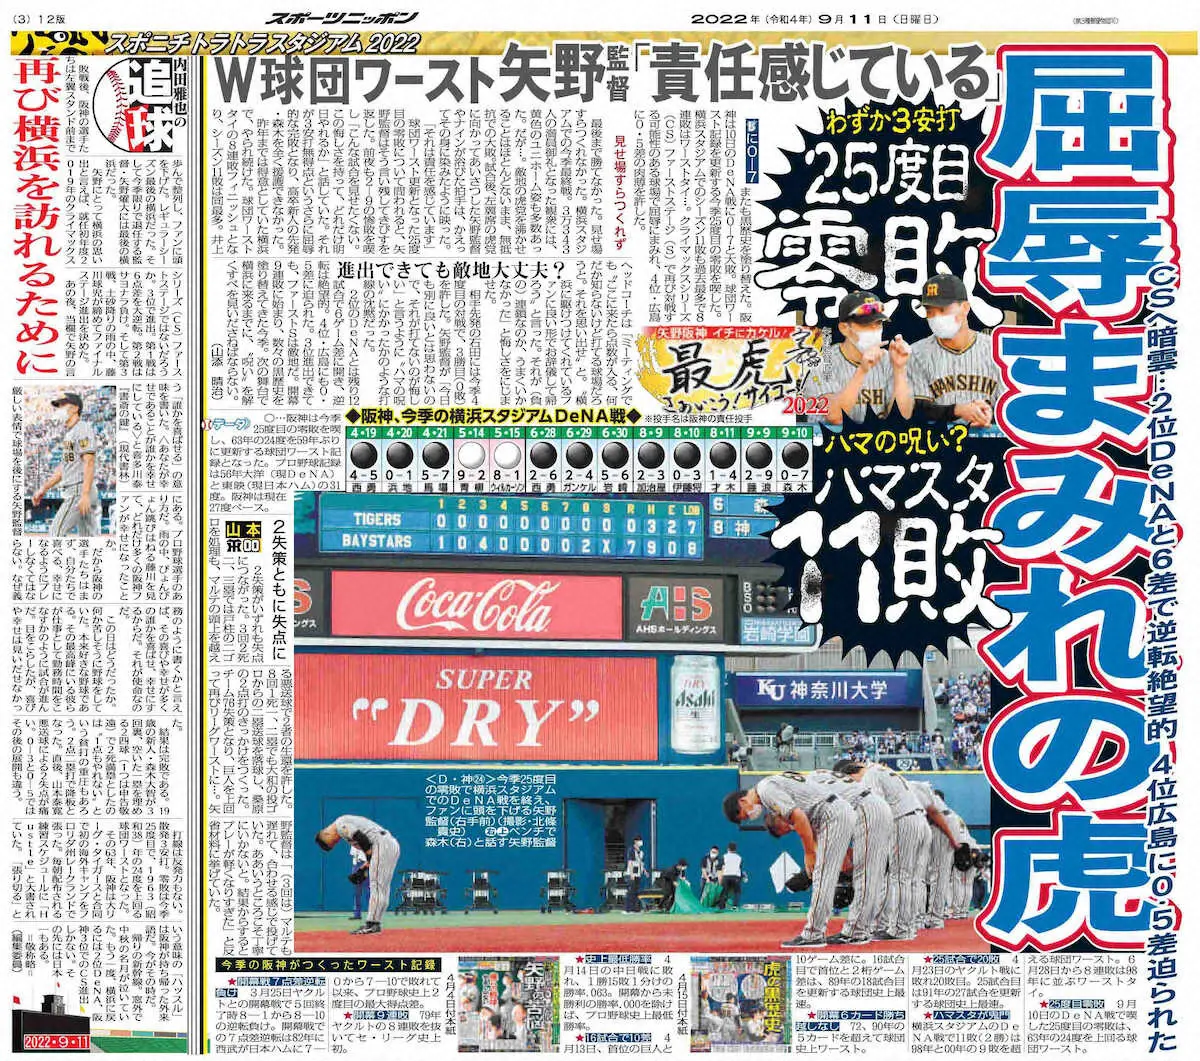 球団ワースト記録となる横浜スタジアムでのシーズン11敗を報じる22年9月11日付本紙